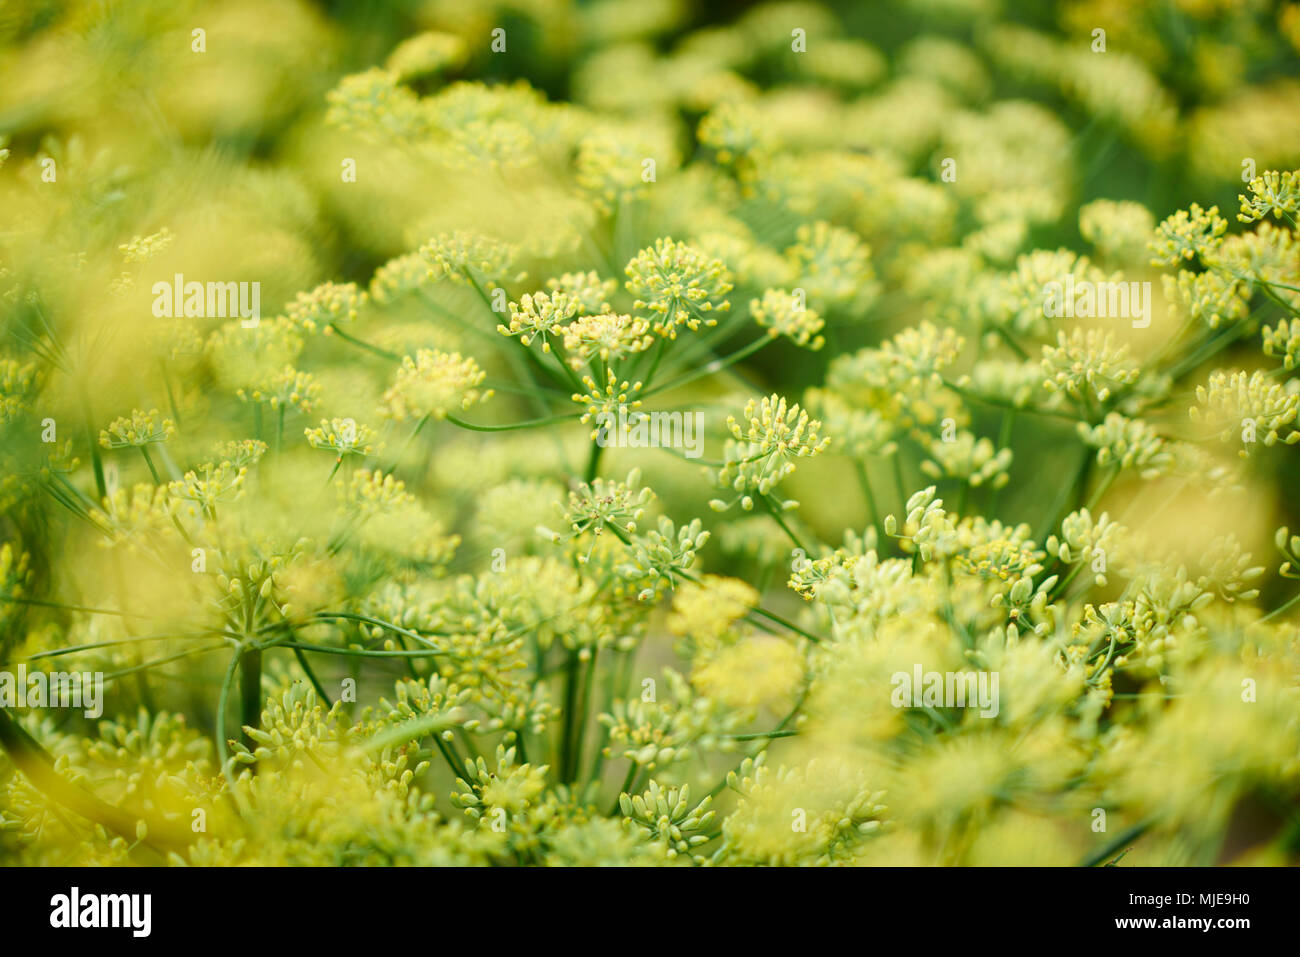 Dill als Pflanze mit vielen Blüten und Dolden in Gelb und Grün  Stockfotografie - Alamy